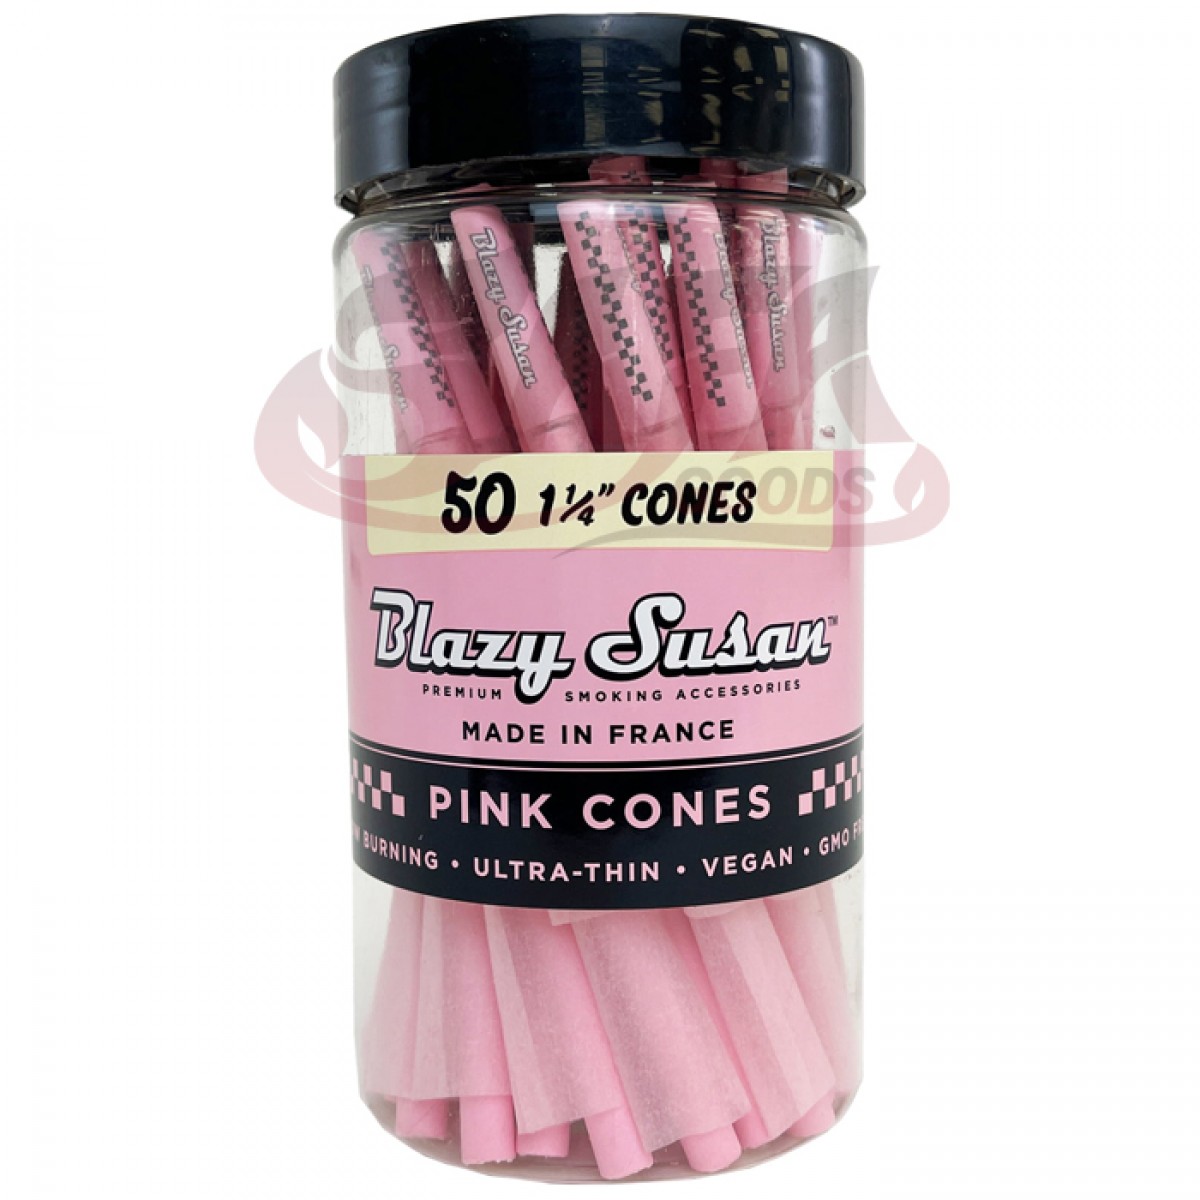 Blazy Susan - Pink Cones 1-1/4 - 50CT Jar